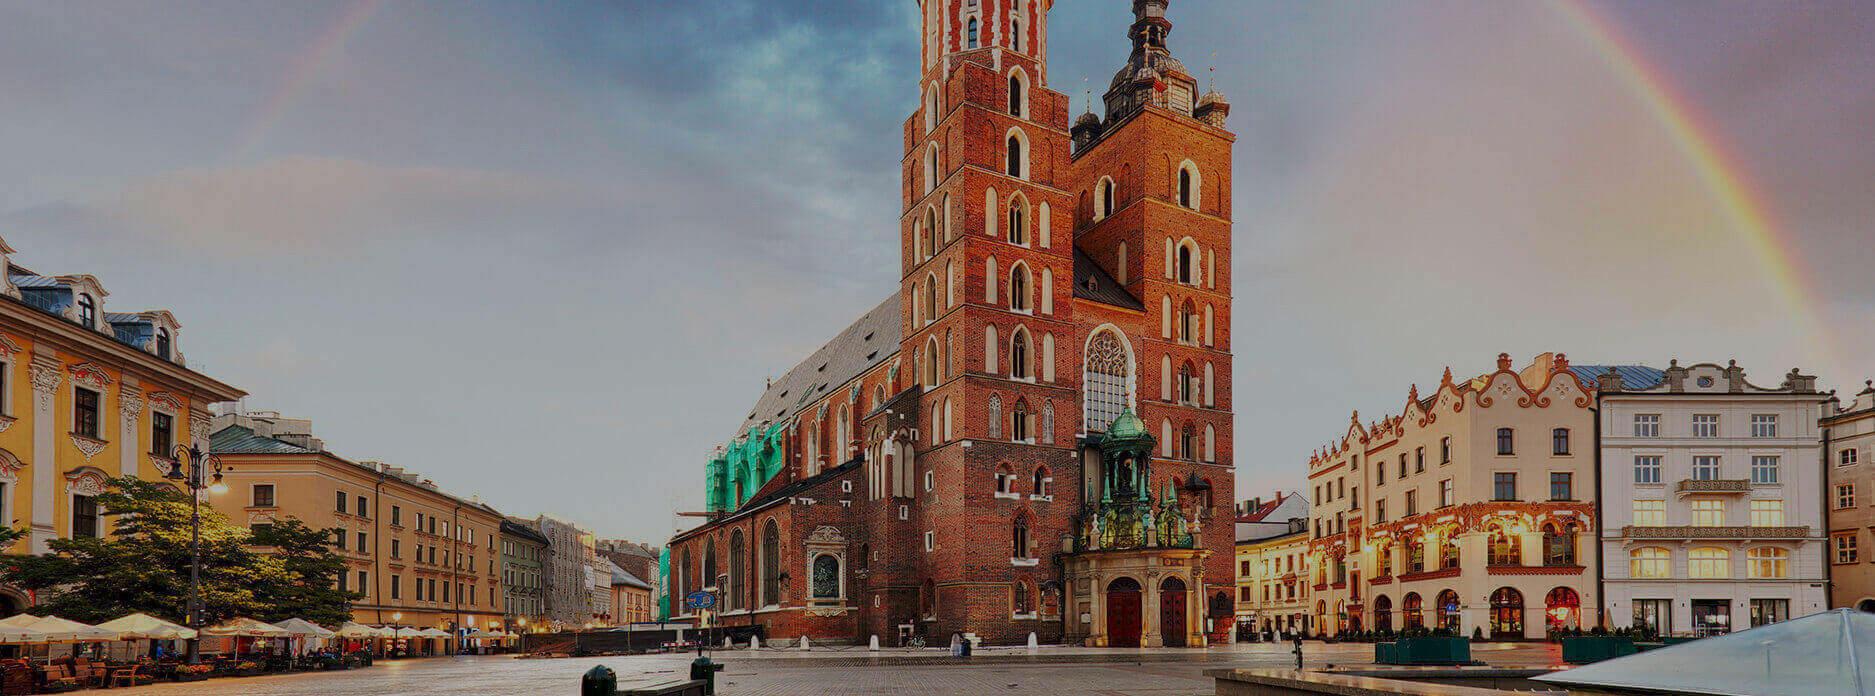 Test NIFTY Kraków - gdzie zrobić badanie w Krakowie?